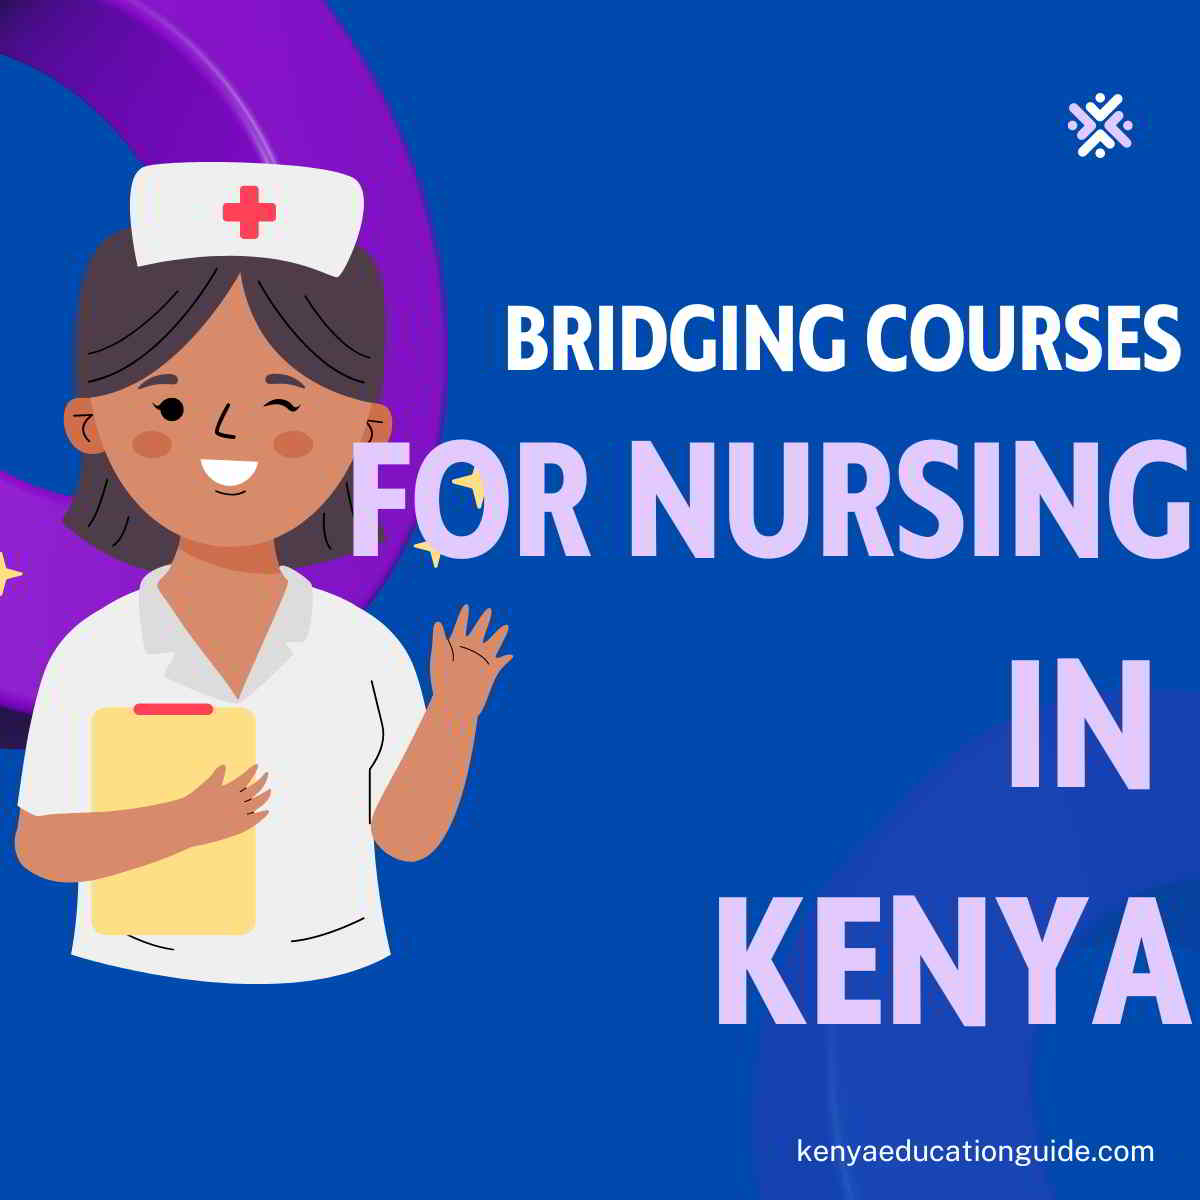 Bridging Courses for Nursing in Kenya